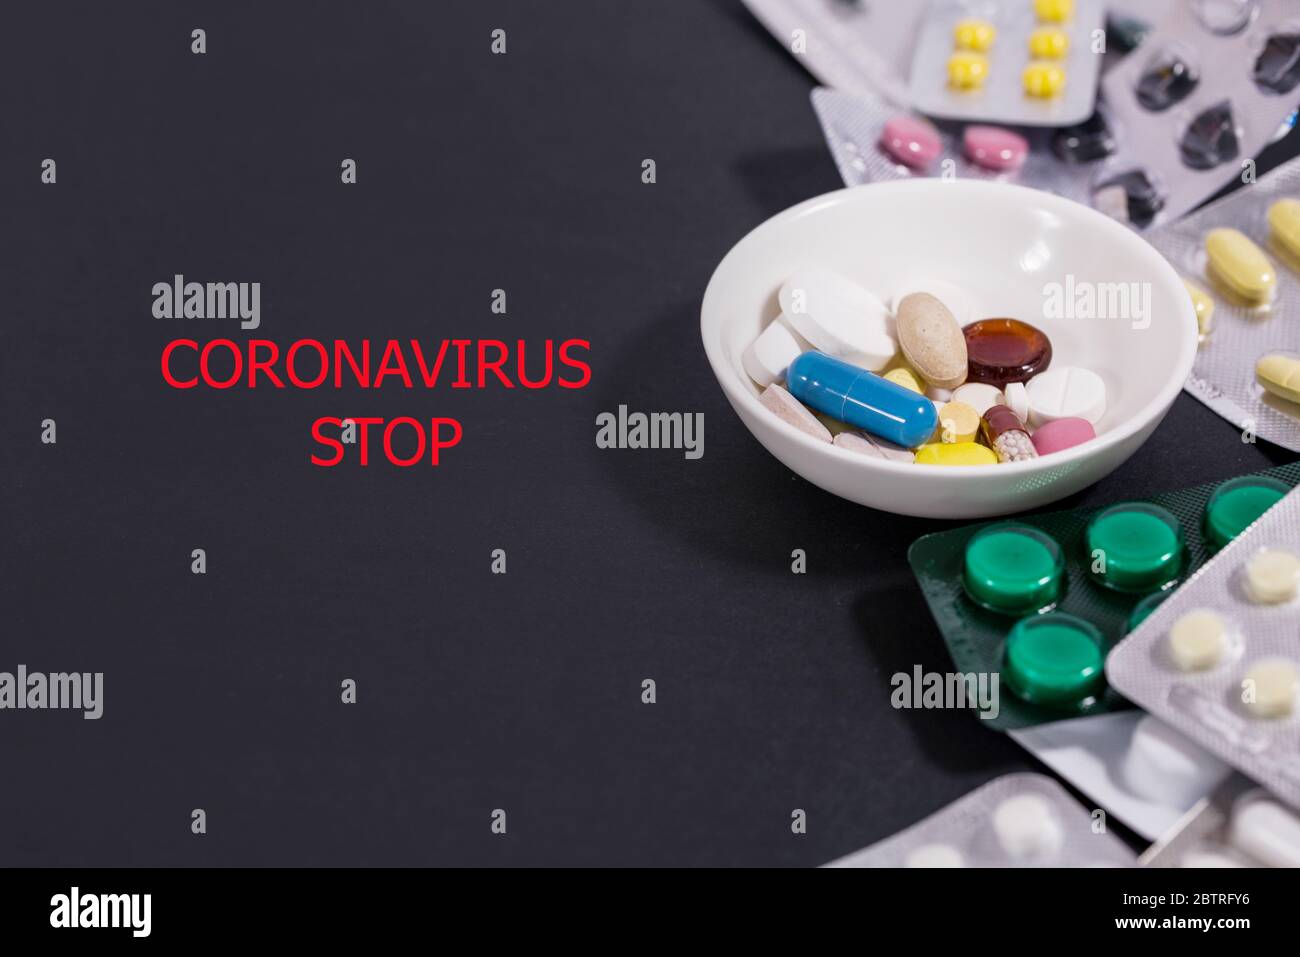 Virus Corona, misteriosa polmonite virale a Wuhan, Cina. Assistenza sanitaria e concetto medico Foto Stock